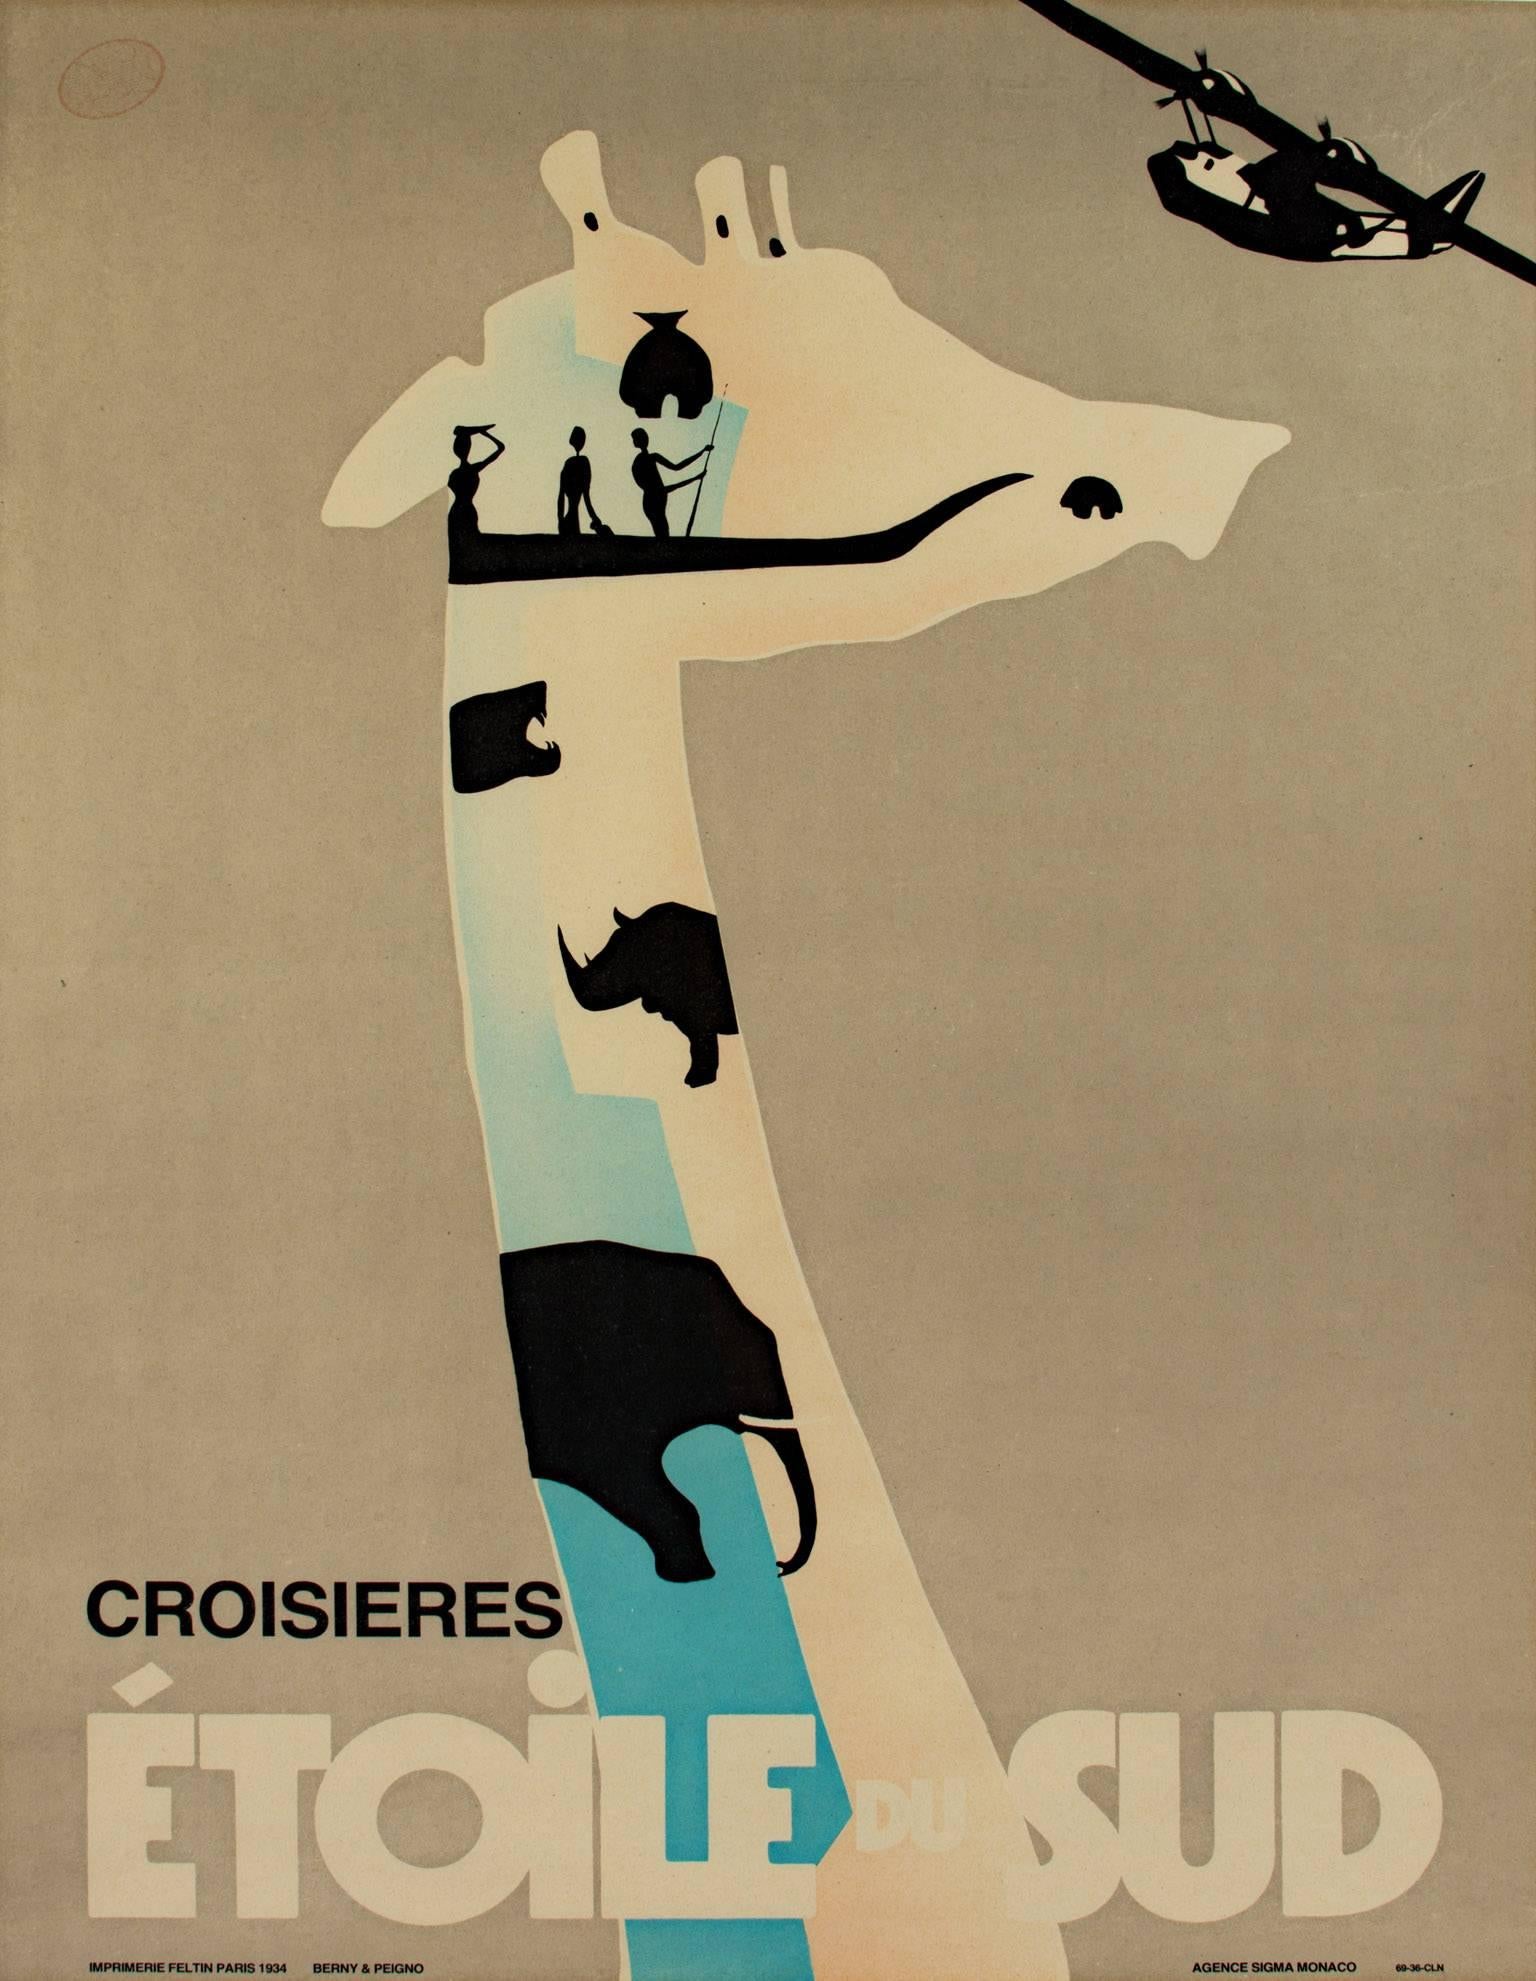 "Croisieres Etoile Du Sud"; ist ein Original-Lithografie-Plakat von Berny Et Peignot, das mehrere Tiersilhouetten in Blau, Hellbraun und Schwarz zeigt. 1934.

34.9375" x 25.9375" Kunst
37.75" x 28.875 gerahmt

Dieses Bild wurde 1934 für dieses